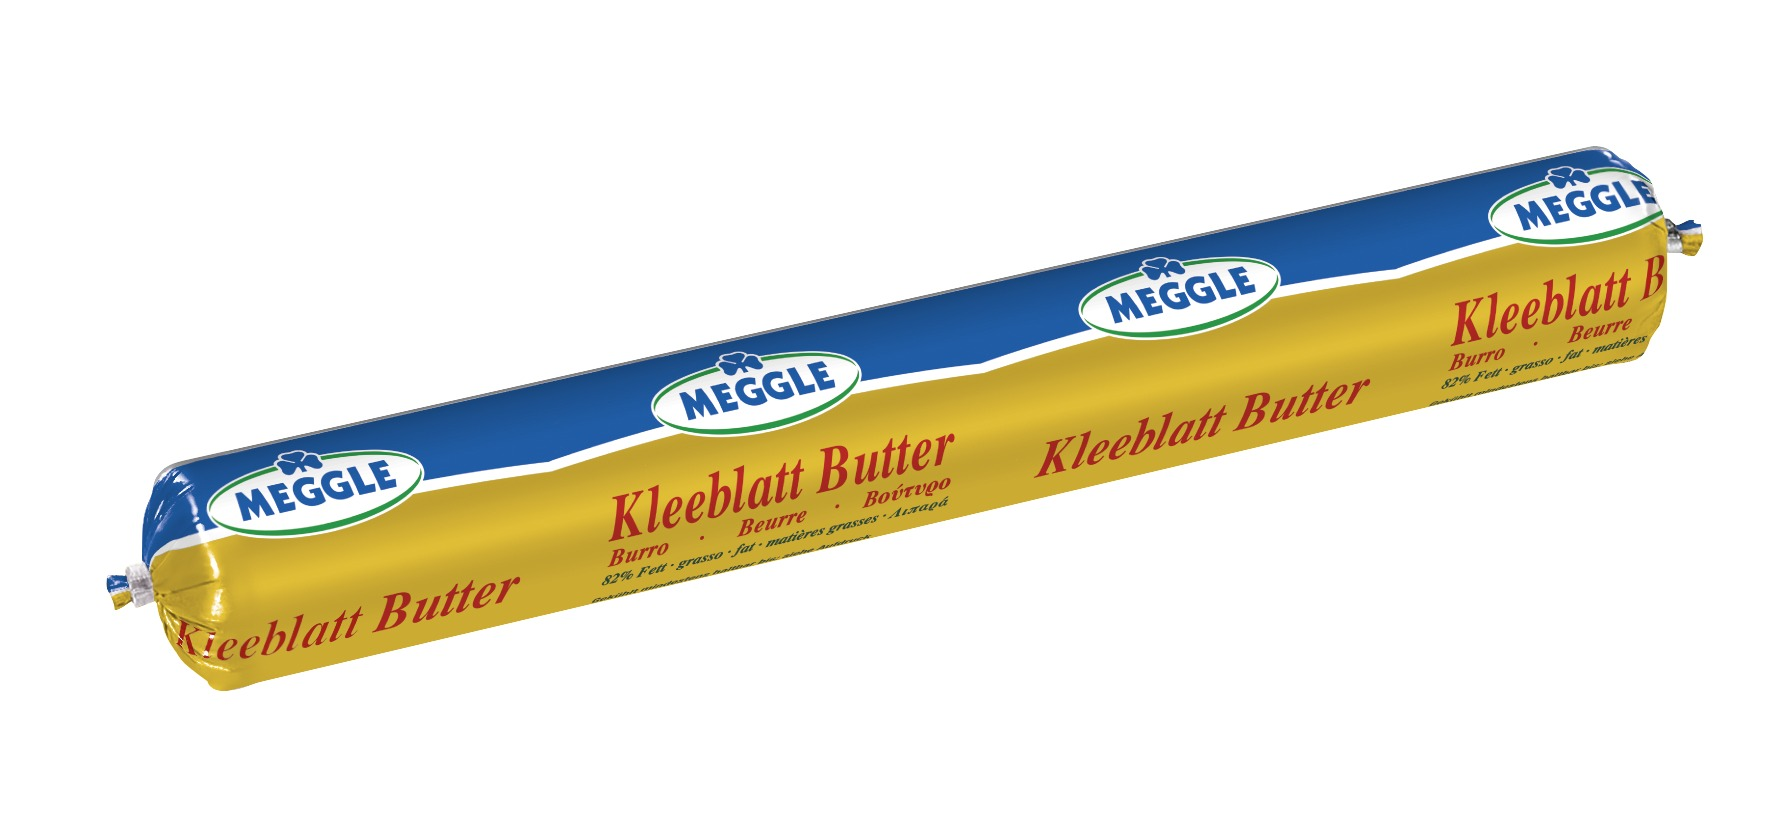 Meggle_Foodservice_Kleeblatt_Butter_ungesalzen_250g_470x280